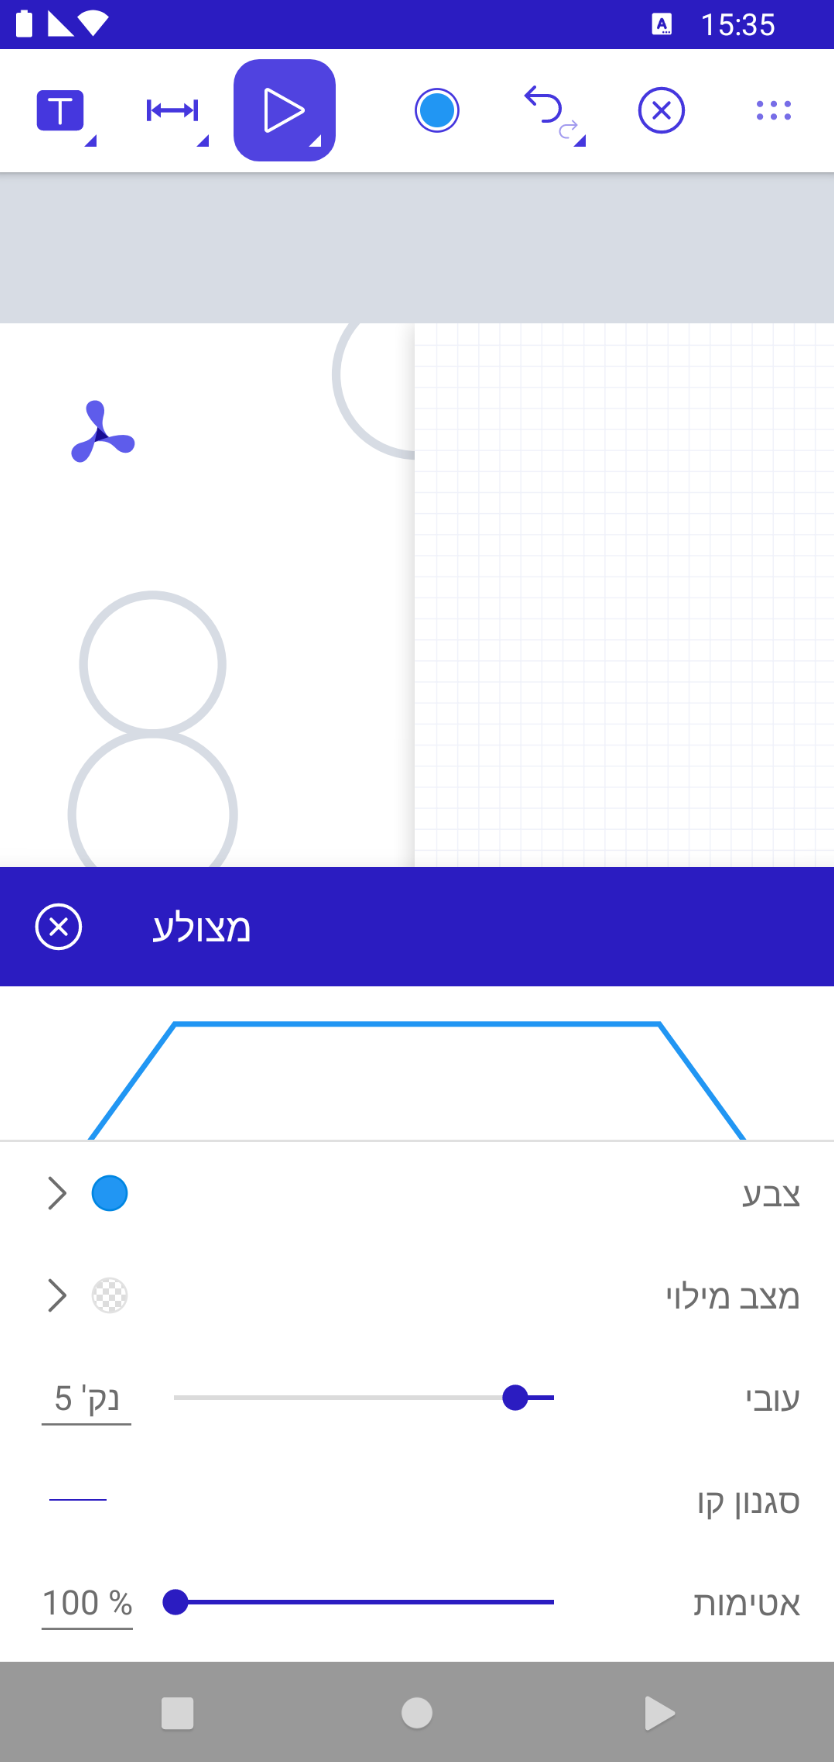 Screenshot showing the UI in Hebrew